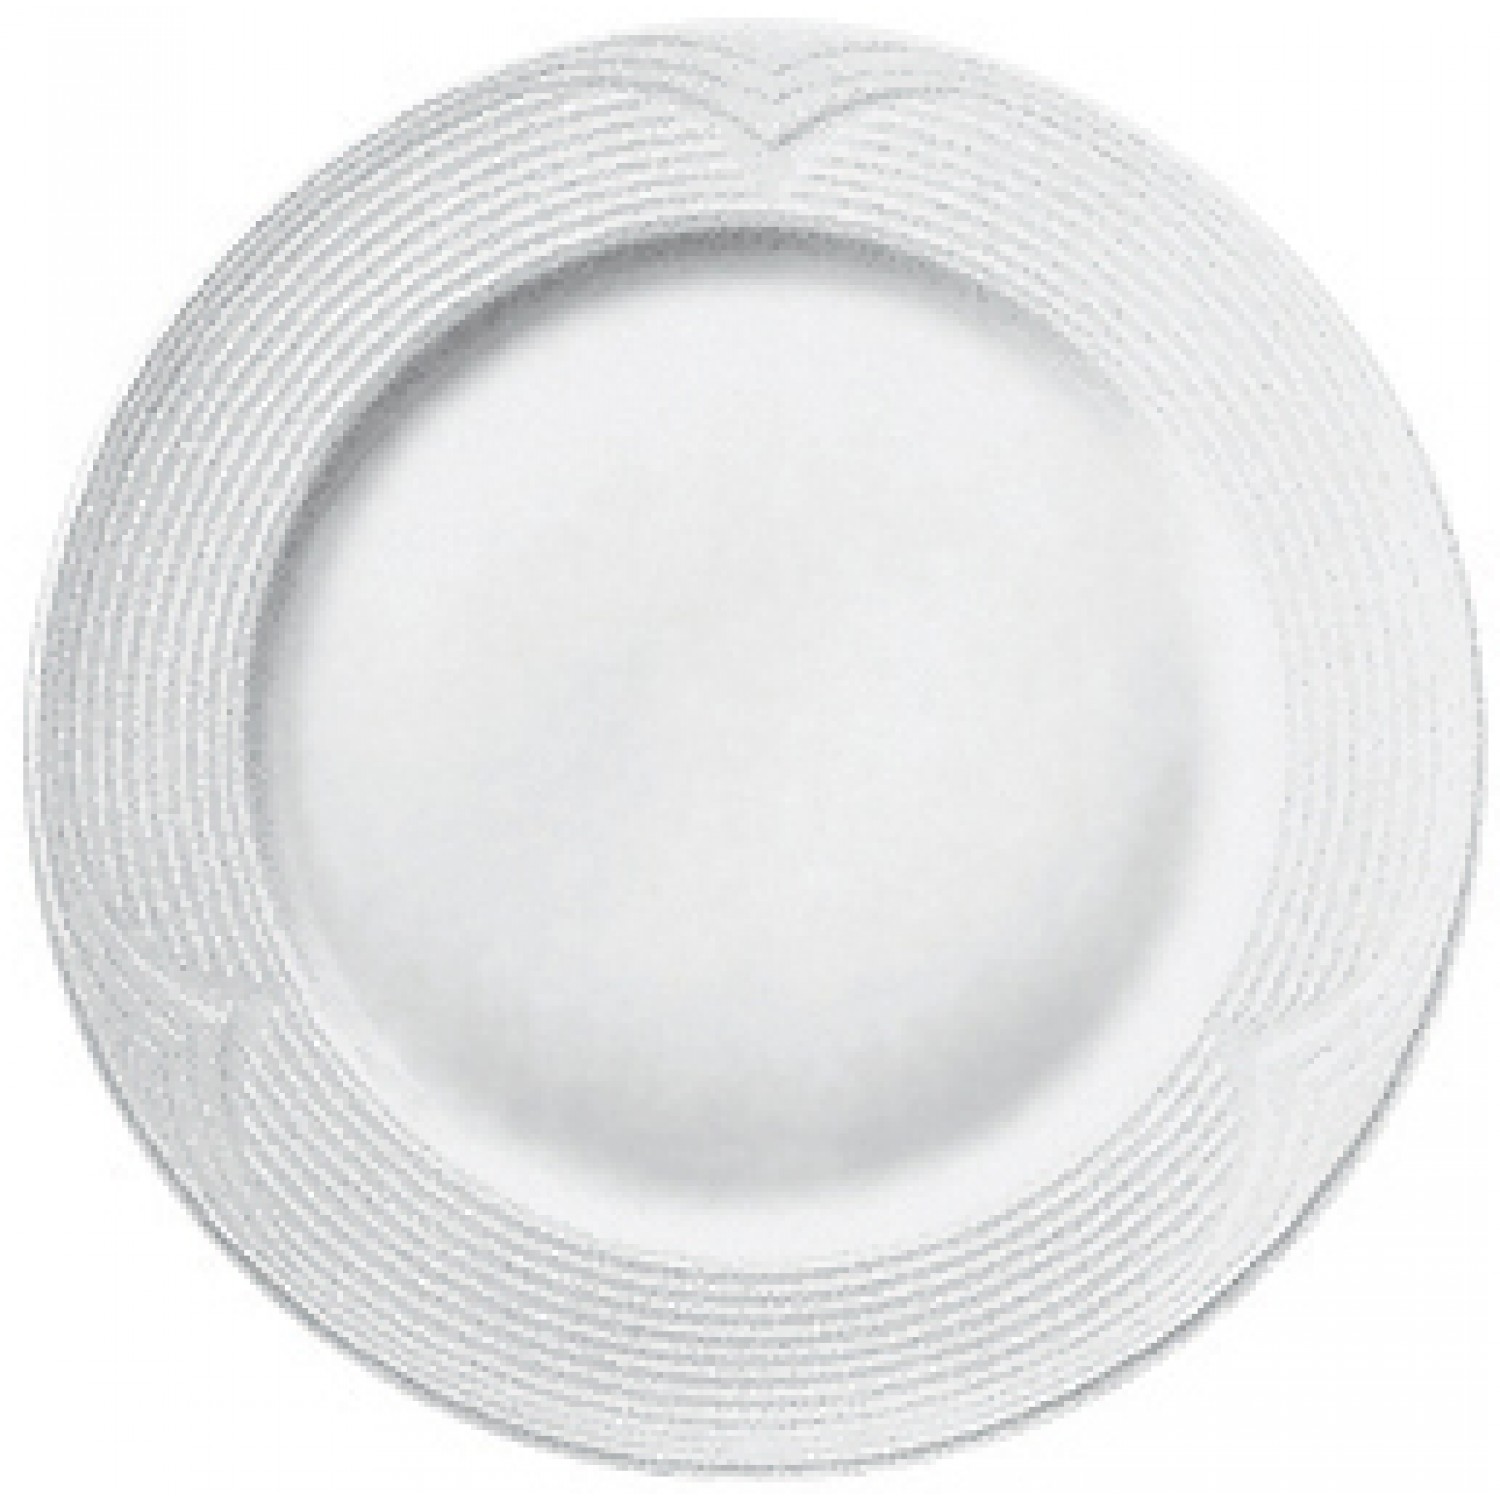 Πιάτο Ρηχό Στρογγυλό 20cm Άσπρο Πορσελάνης Saturn Gural 52.52502